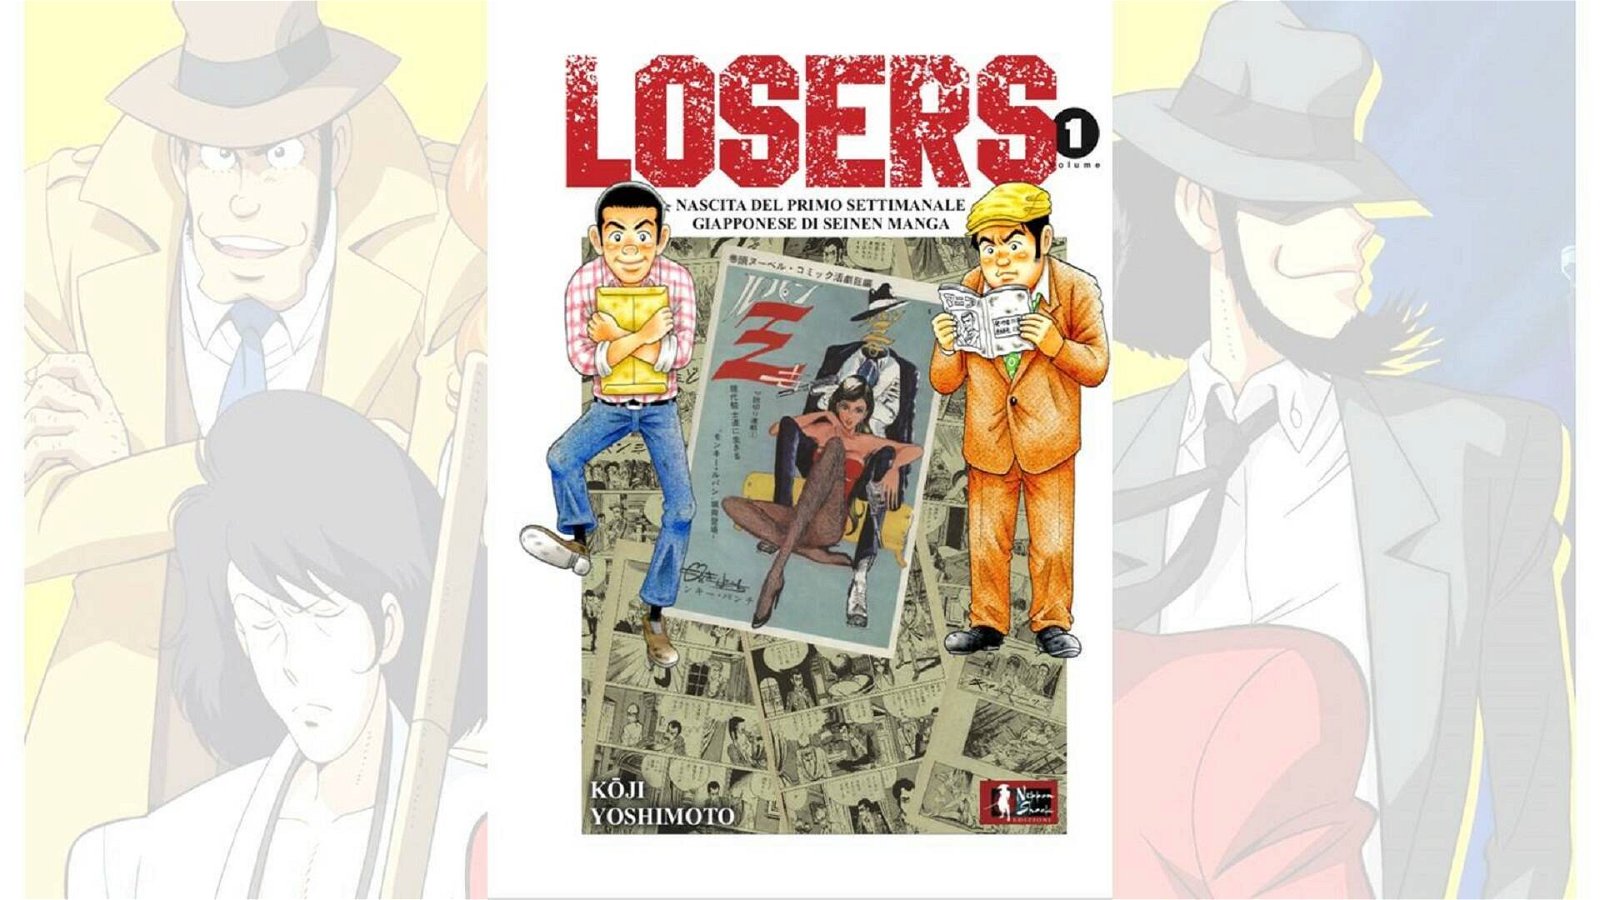 Immagine di Losers, recensione: la nascita di Monkey Punch e Lupin III